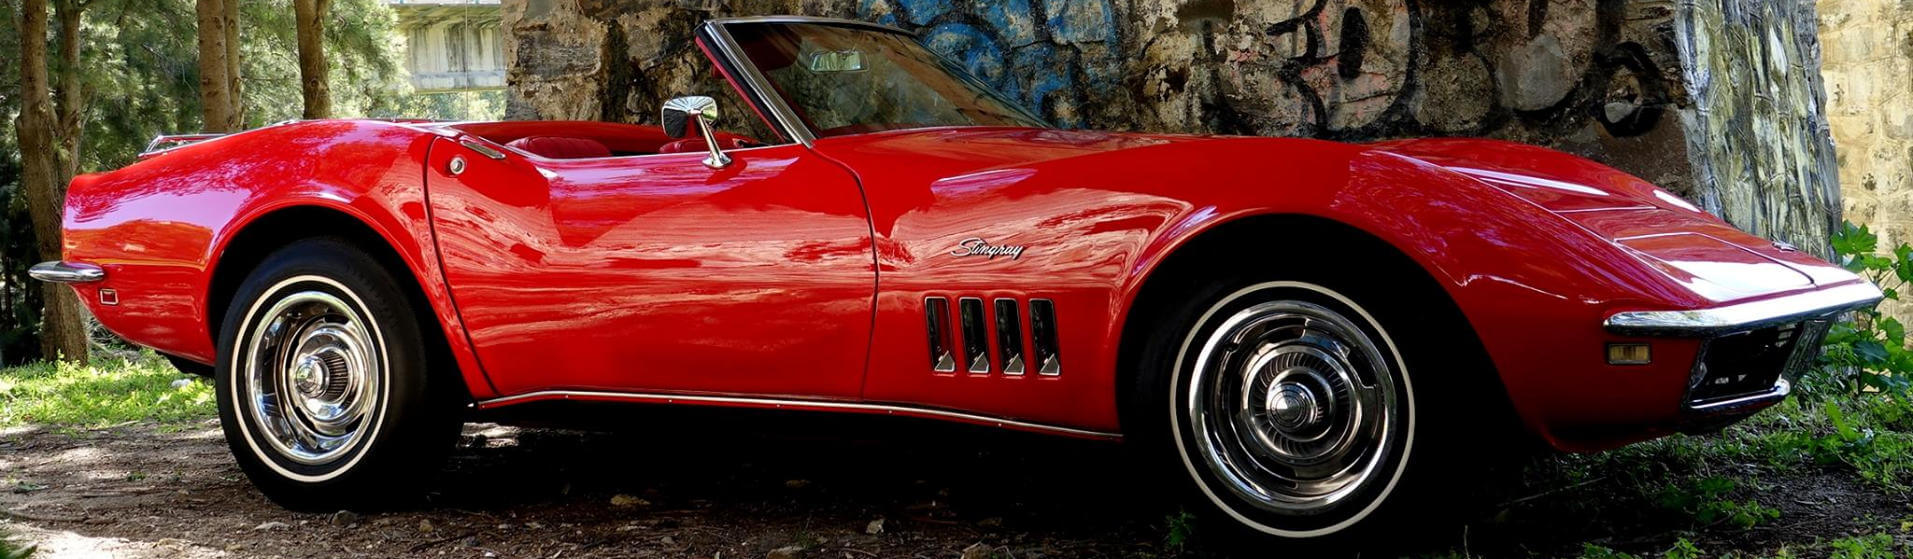 1968 Chevrolet Corvette convertible for sale, C3 Stingray, Marbella, Malaga